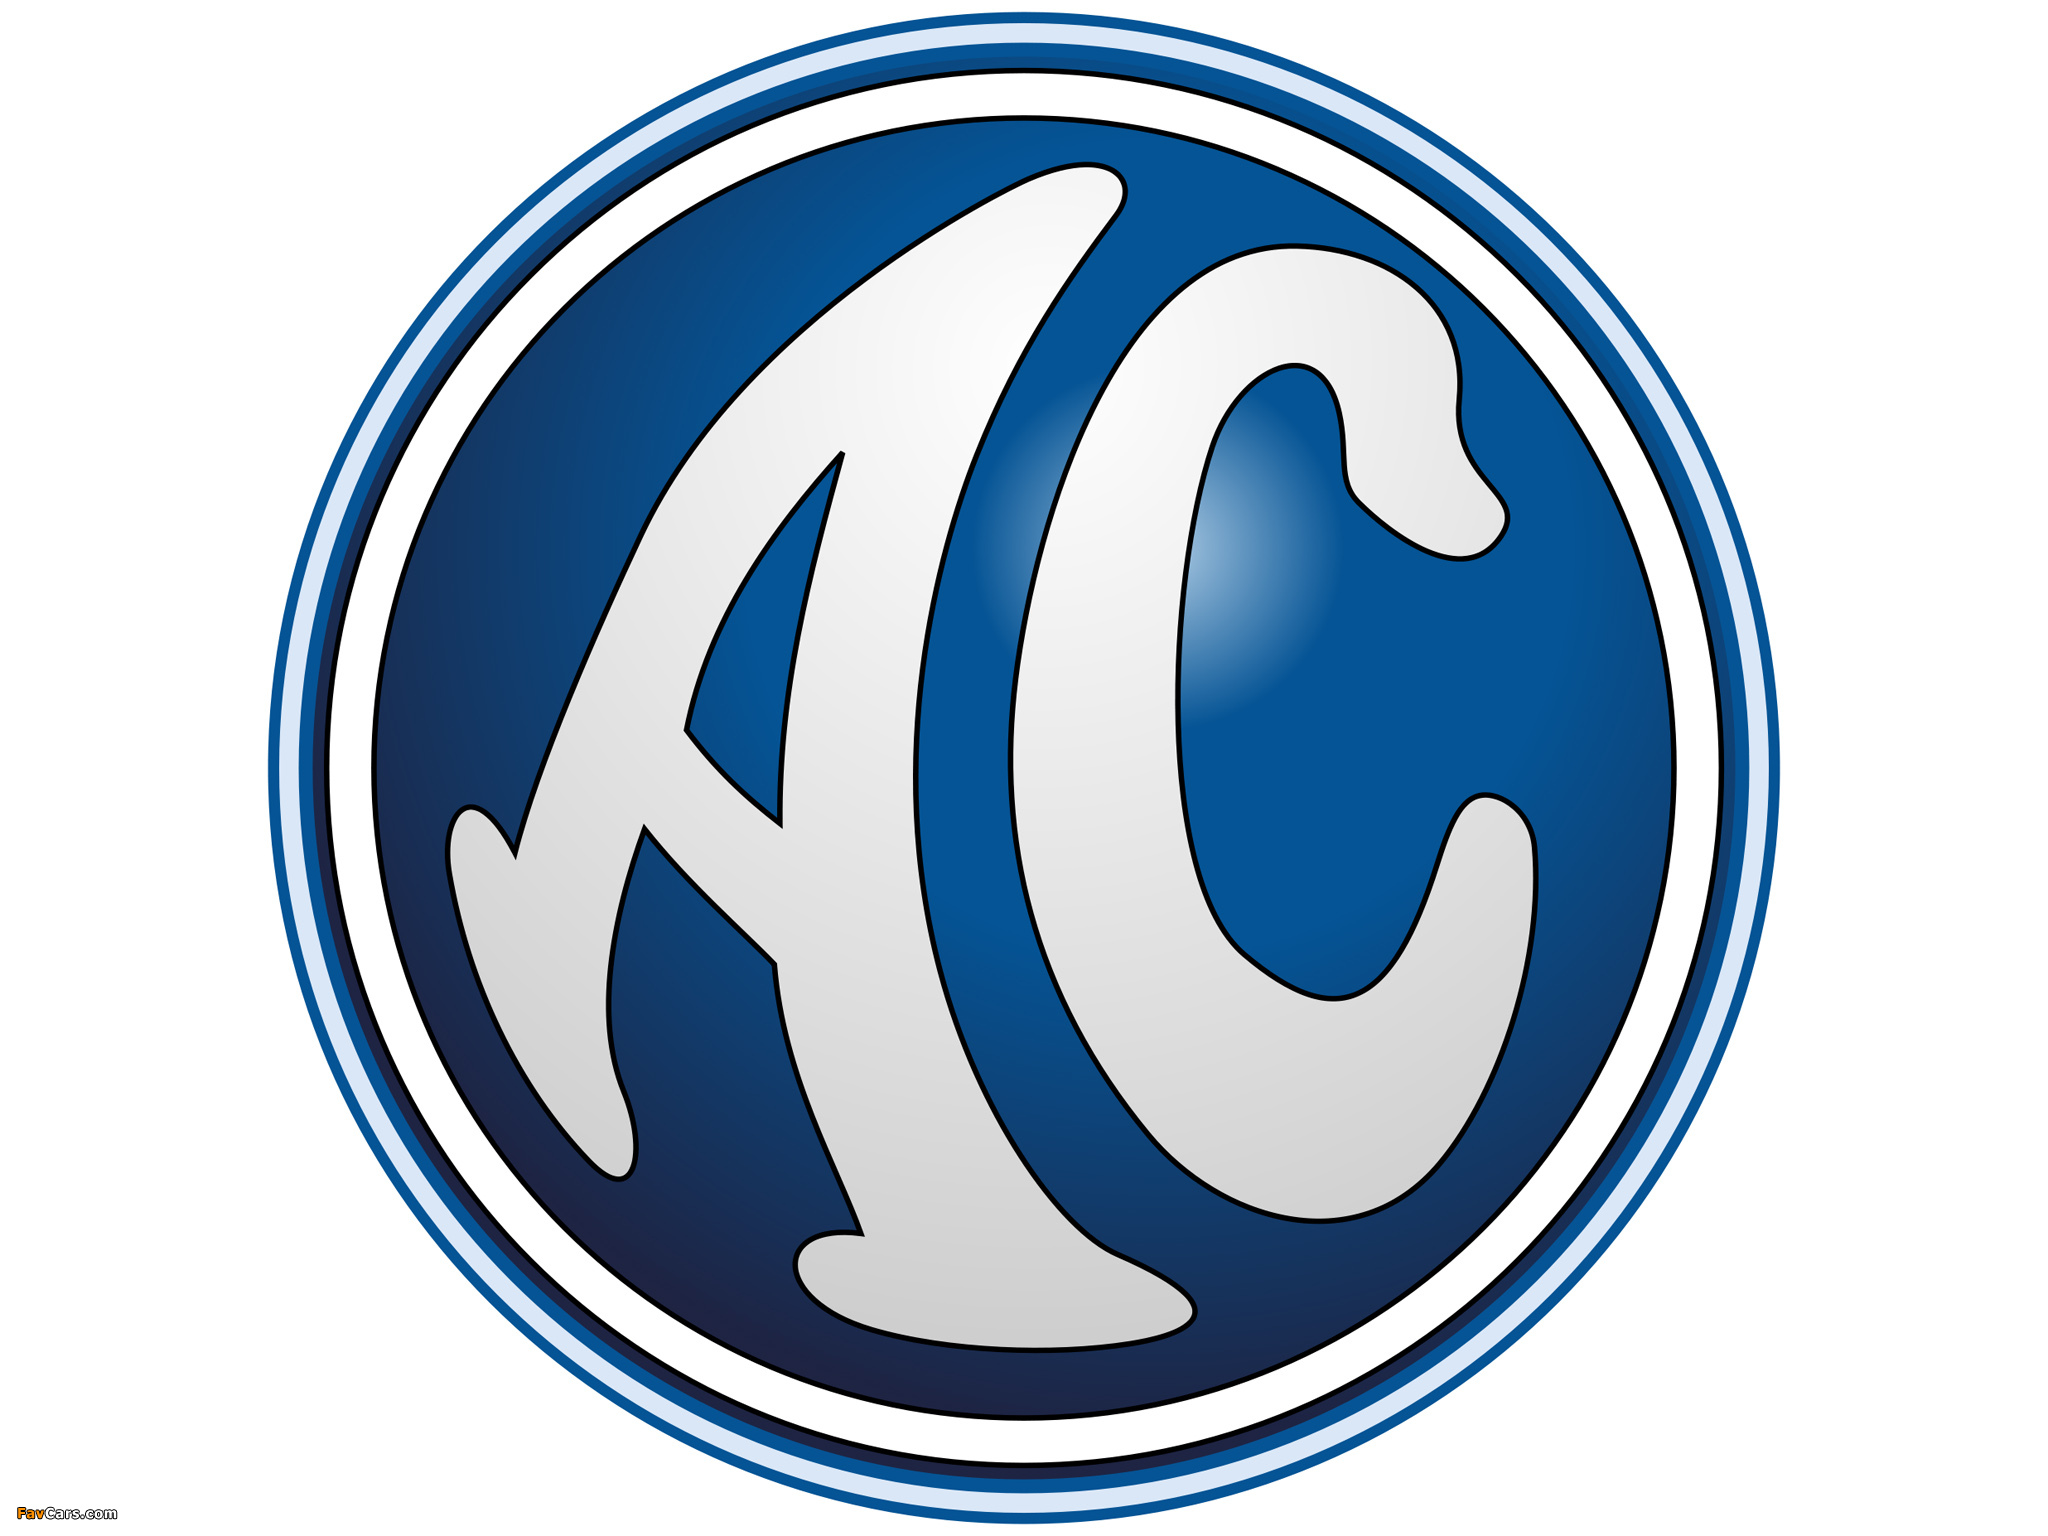 AC Logotypes photos (2048 x 1536)